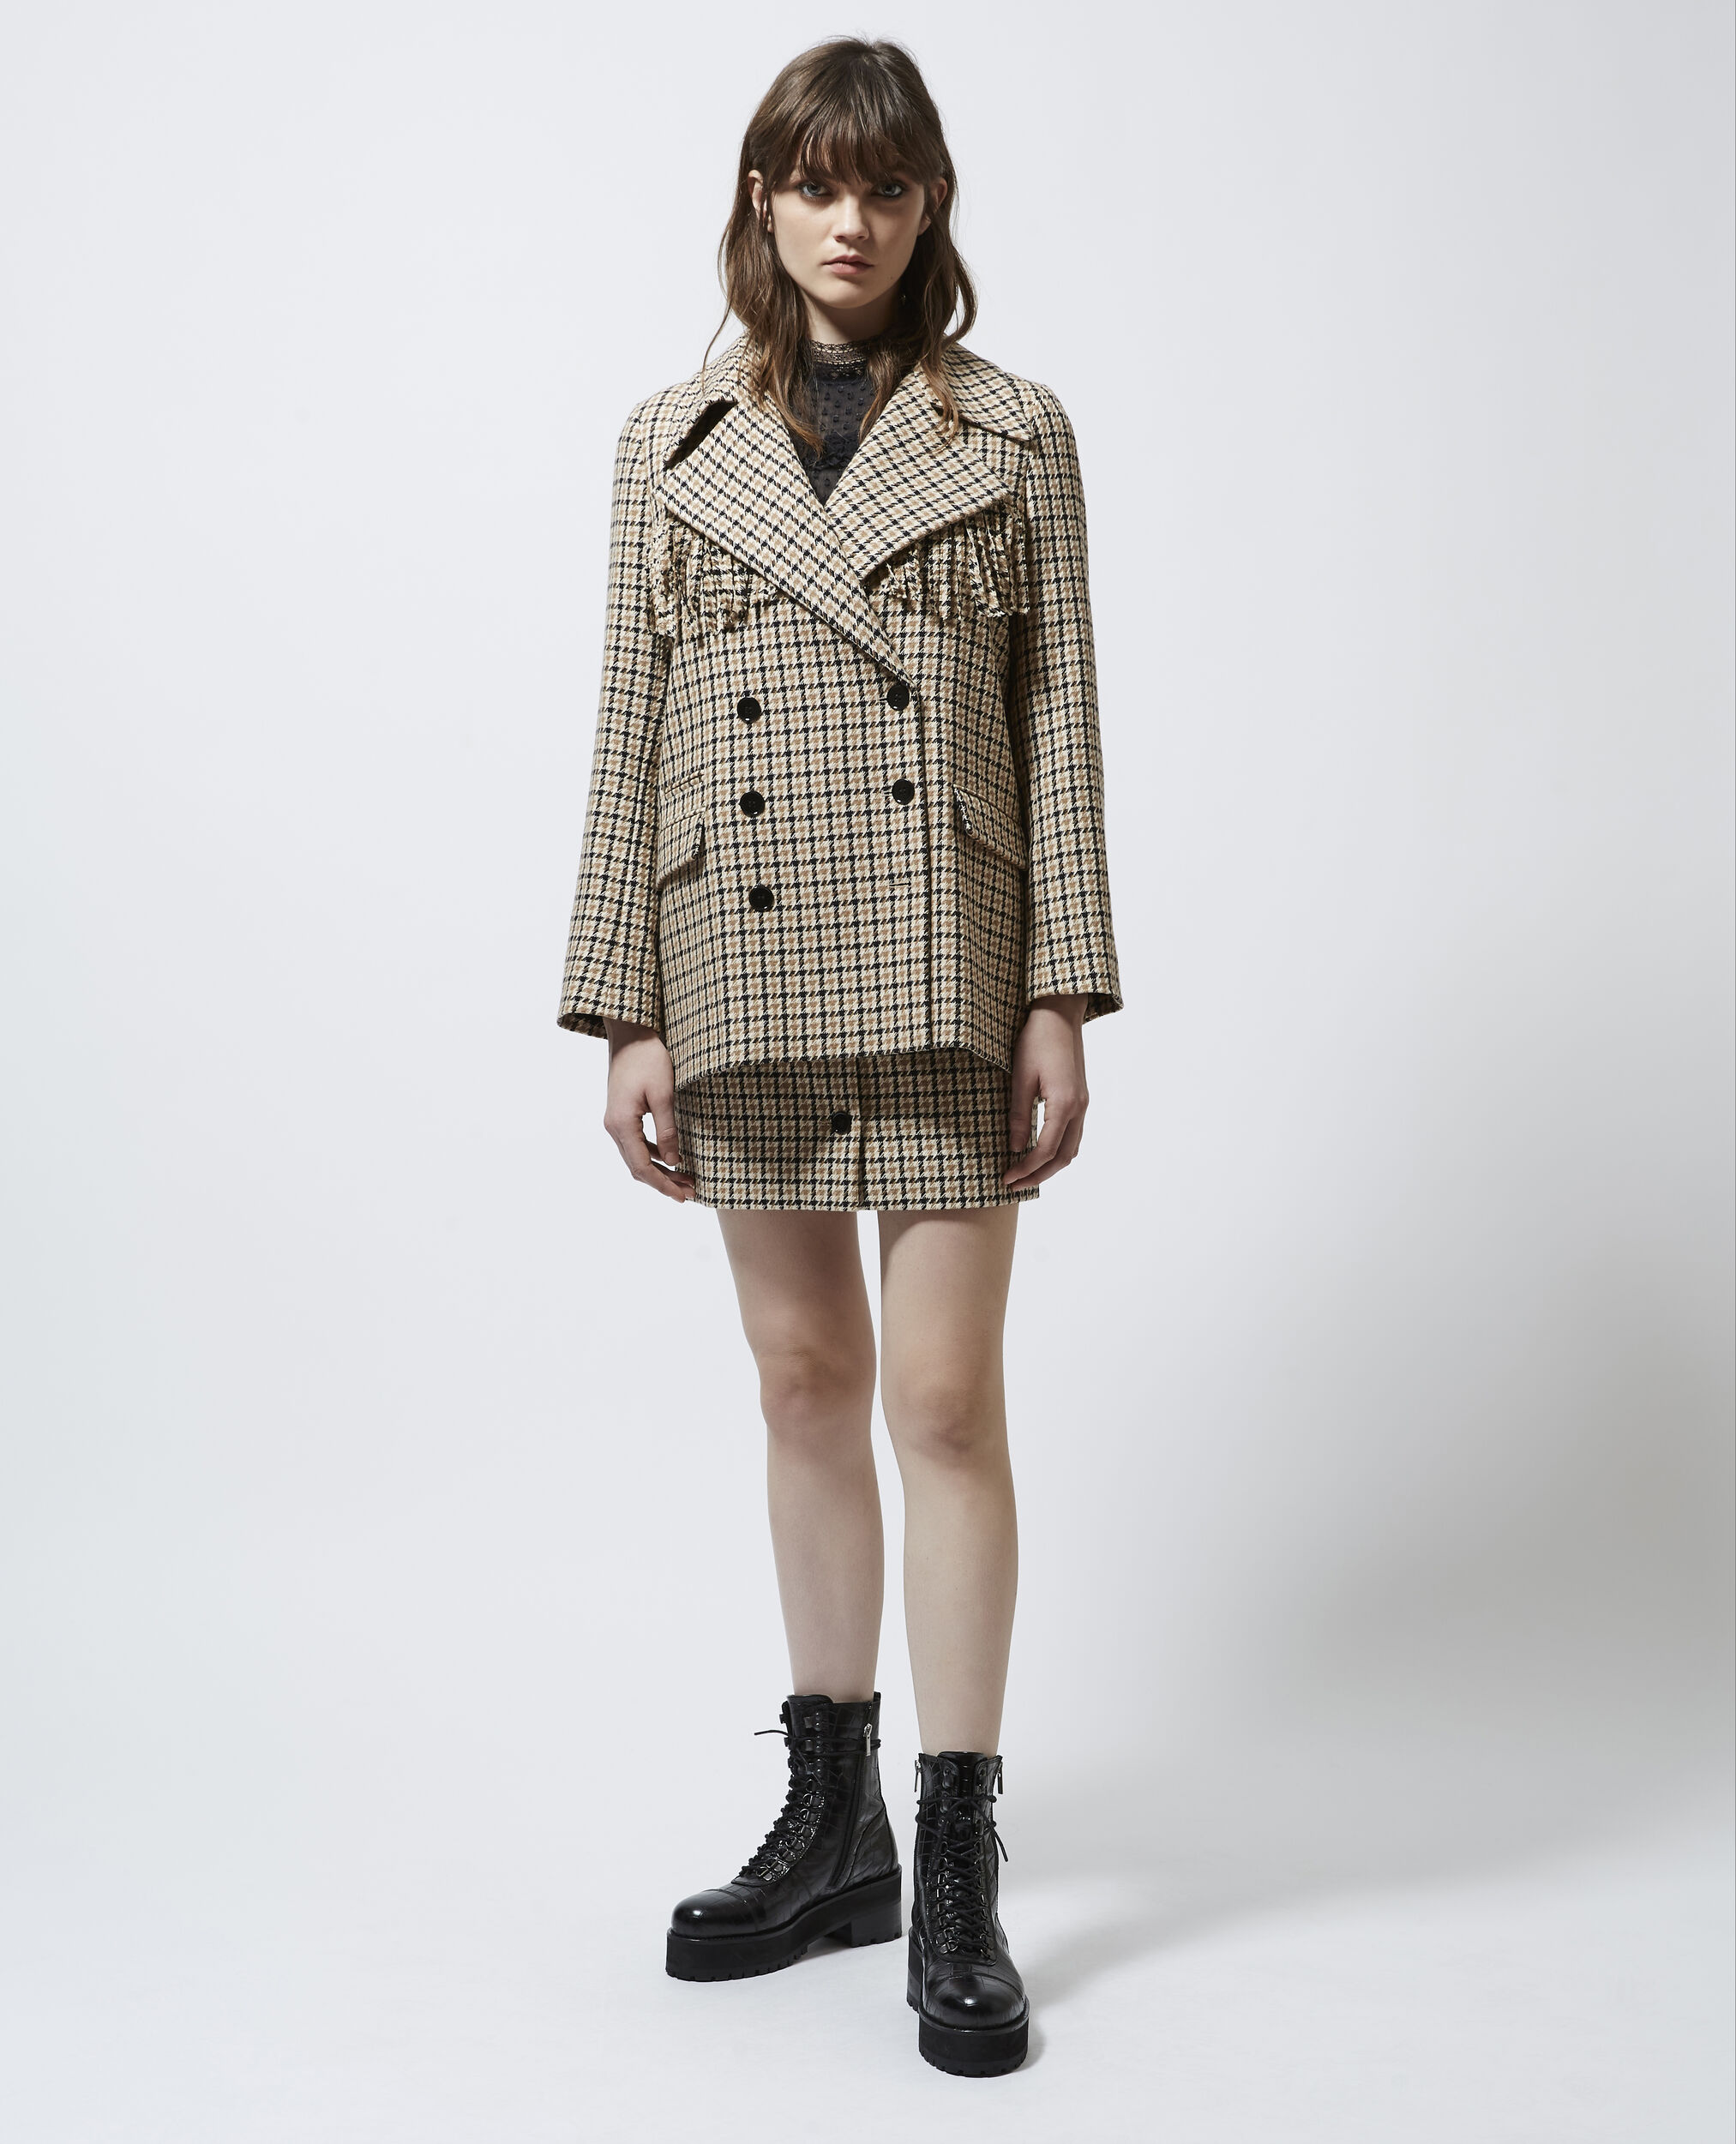 Patterned formal wool jacket with fringing, BEIGE / BROWN / BLACK, hi-res image number null